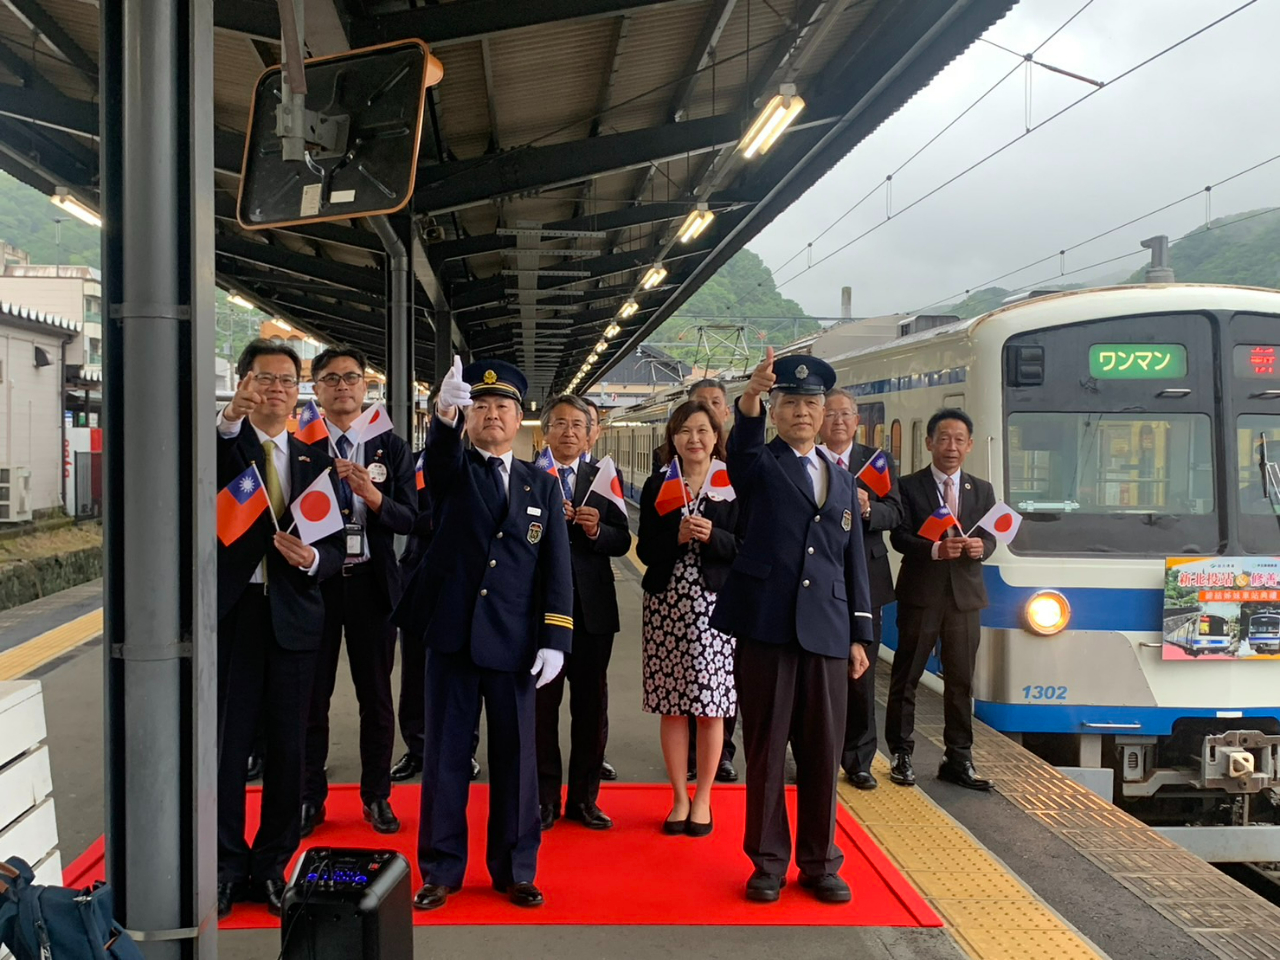 張処長は台北メトロと伊豆箱根鉄道の友好協定締結式に出席した。また台北メトロの新北投駅と姉妹駅になった修善寺駅で列車の出発式に参加した。